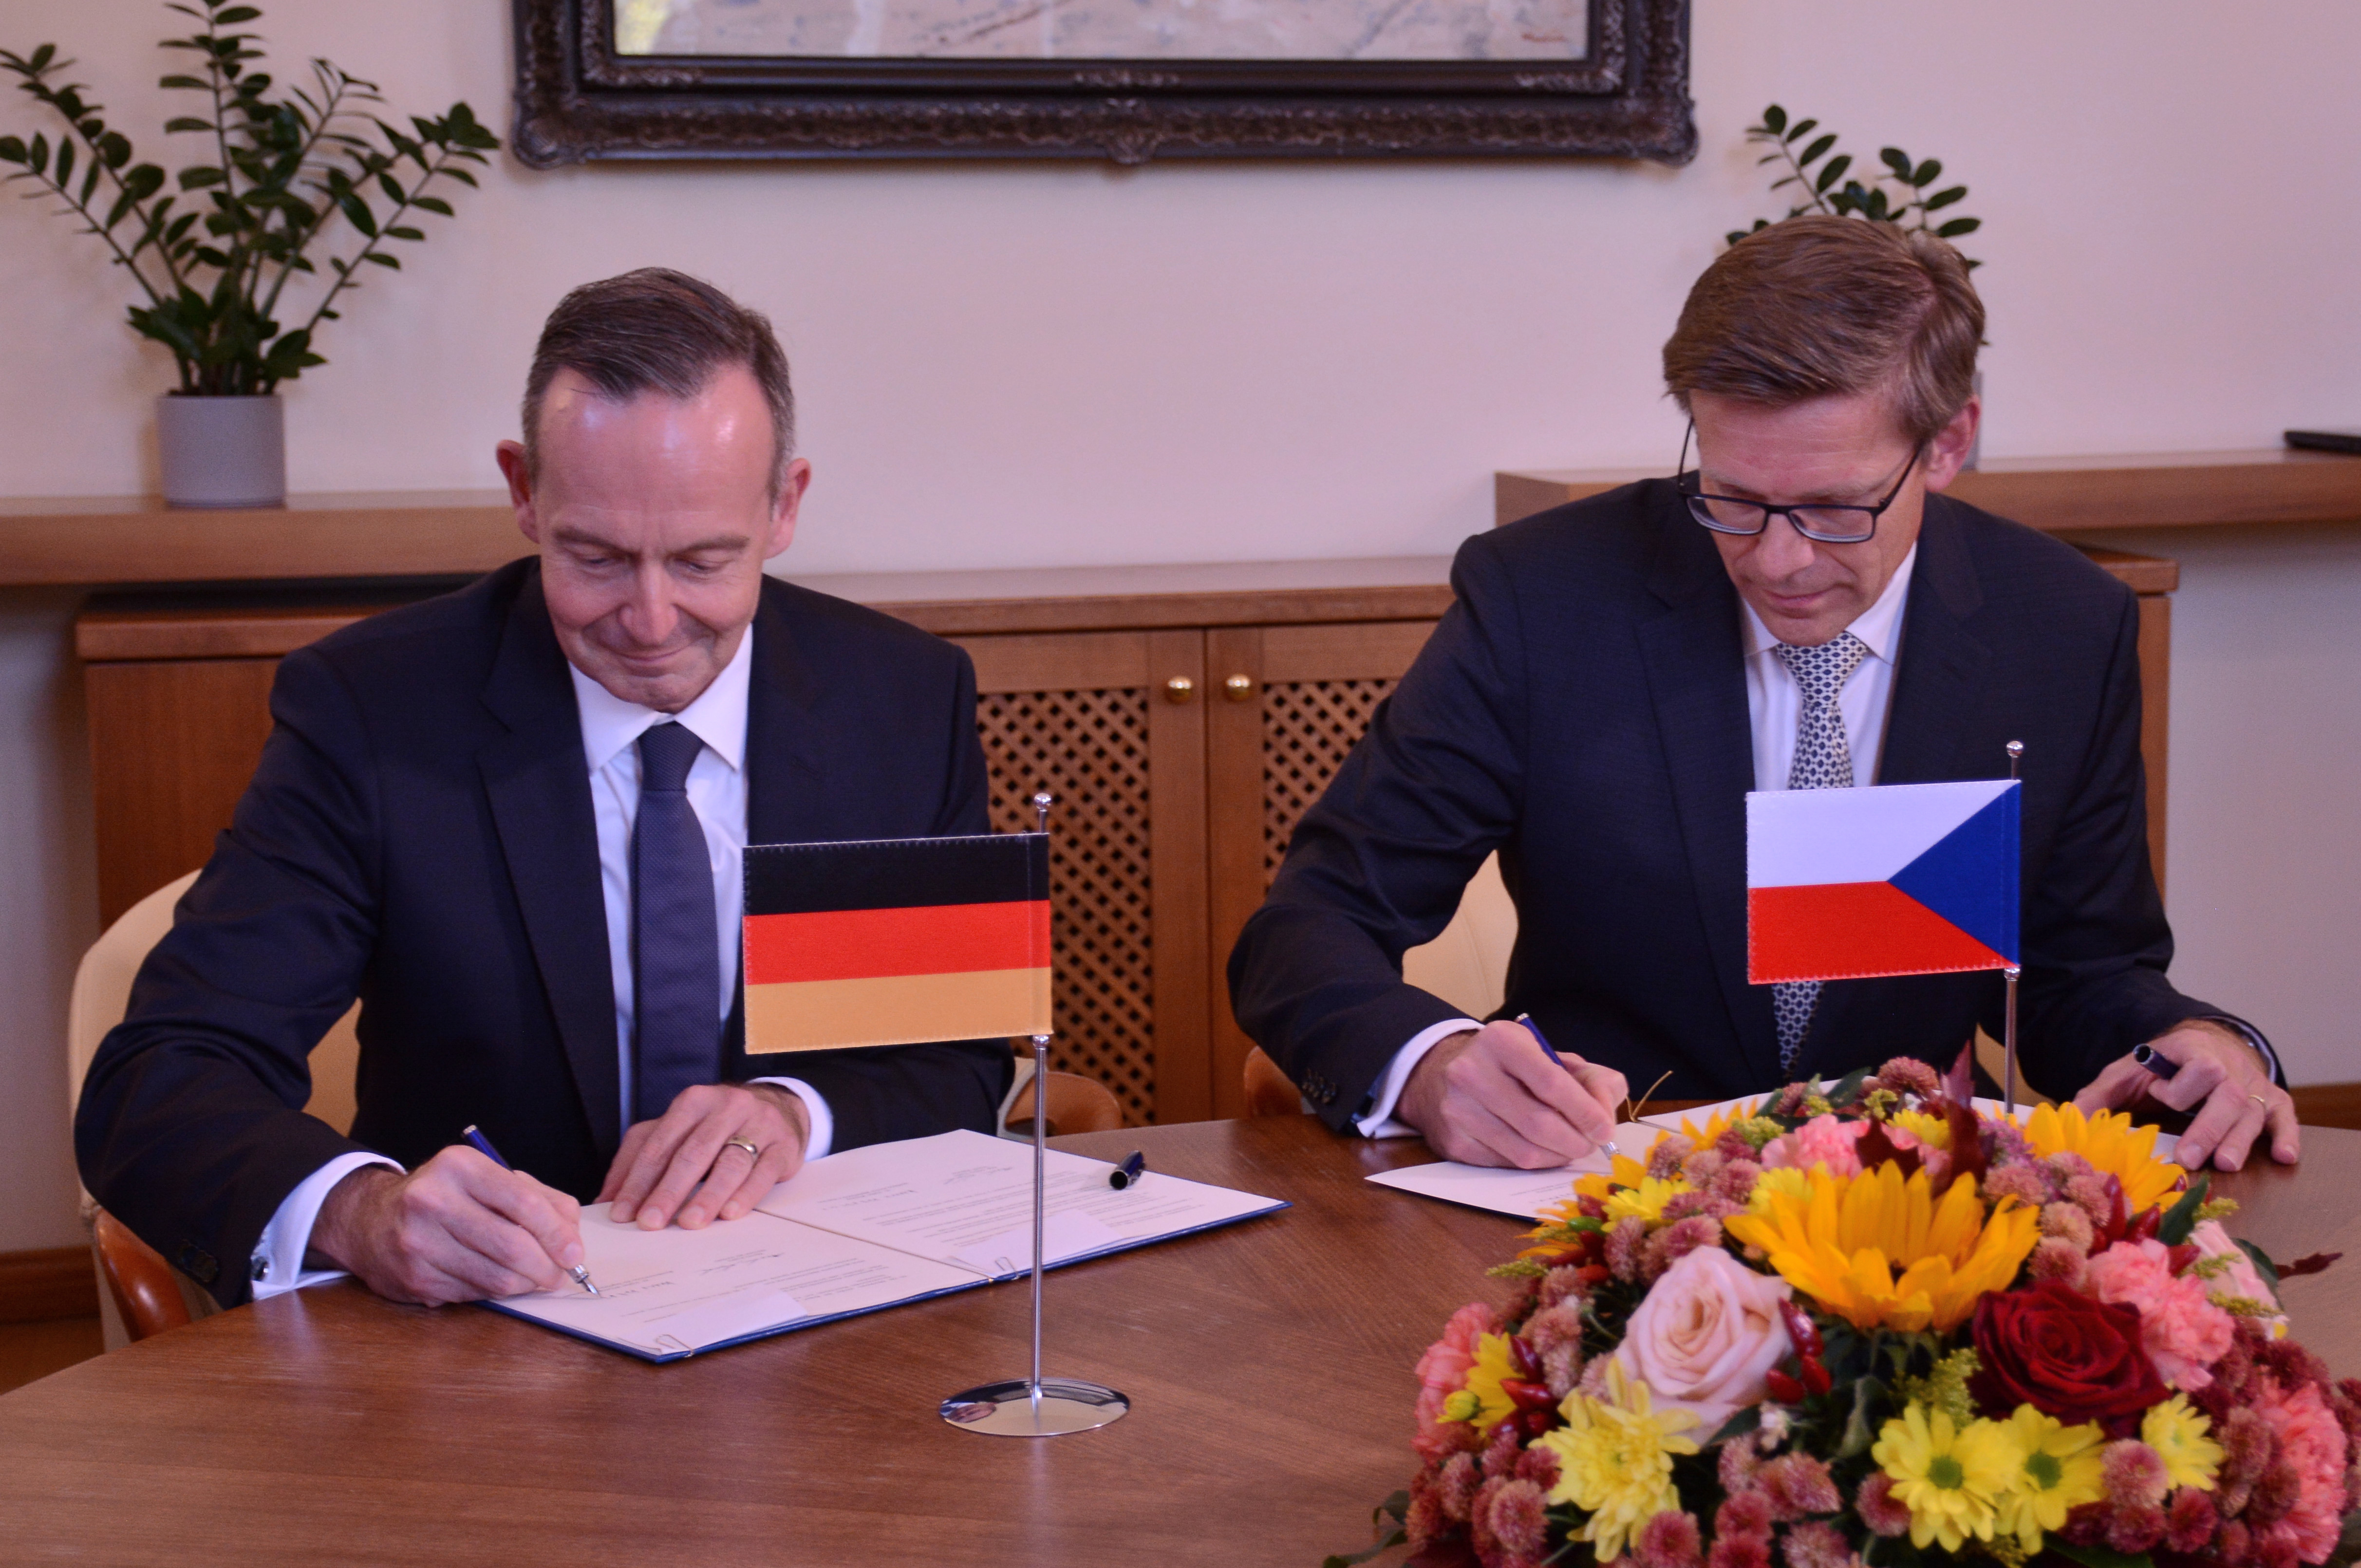 Železniční spojení mezi Českem a Německem se zlepší. Ministři podepsali společné memorandum